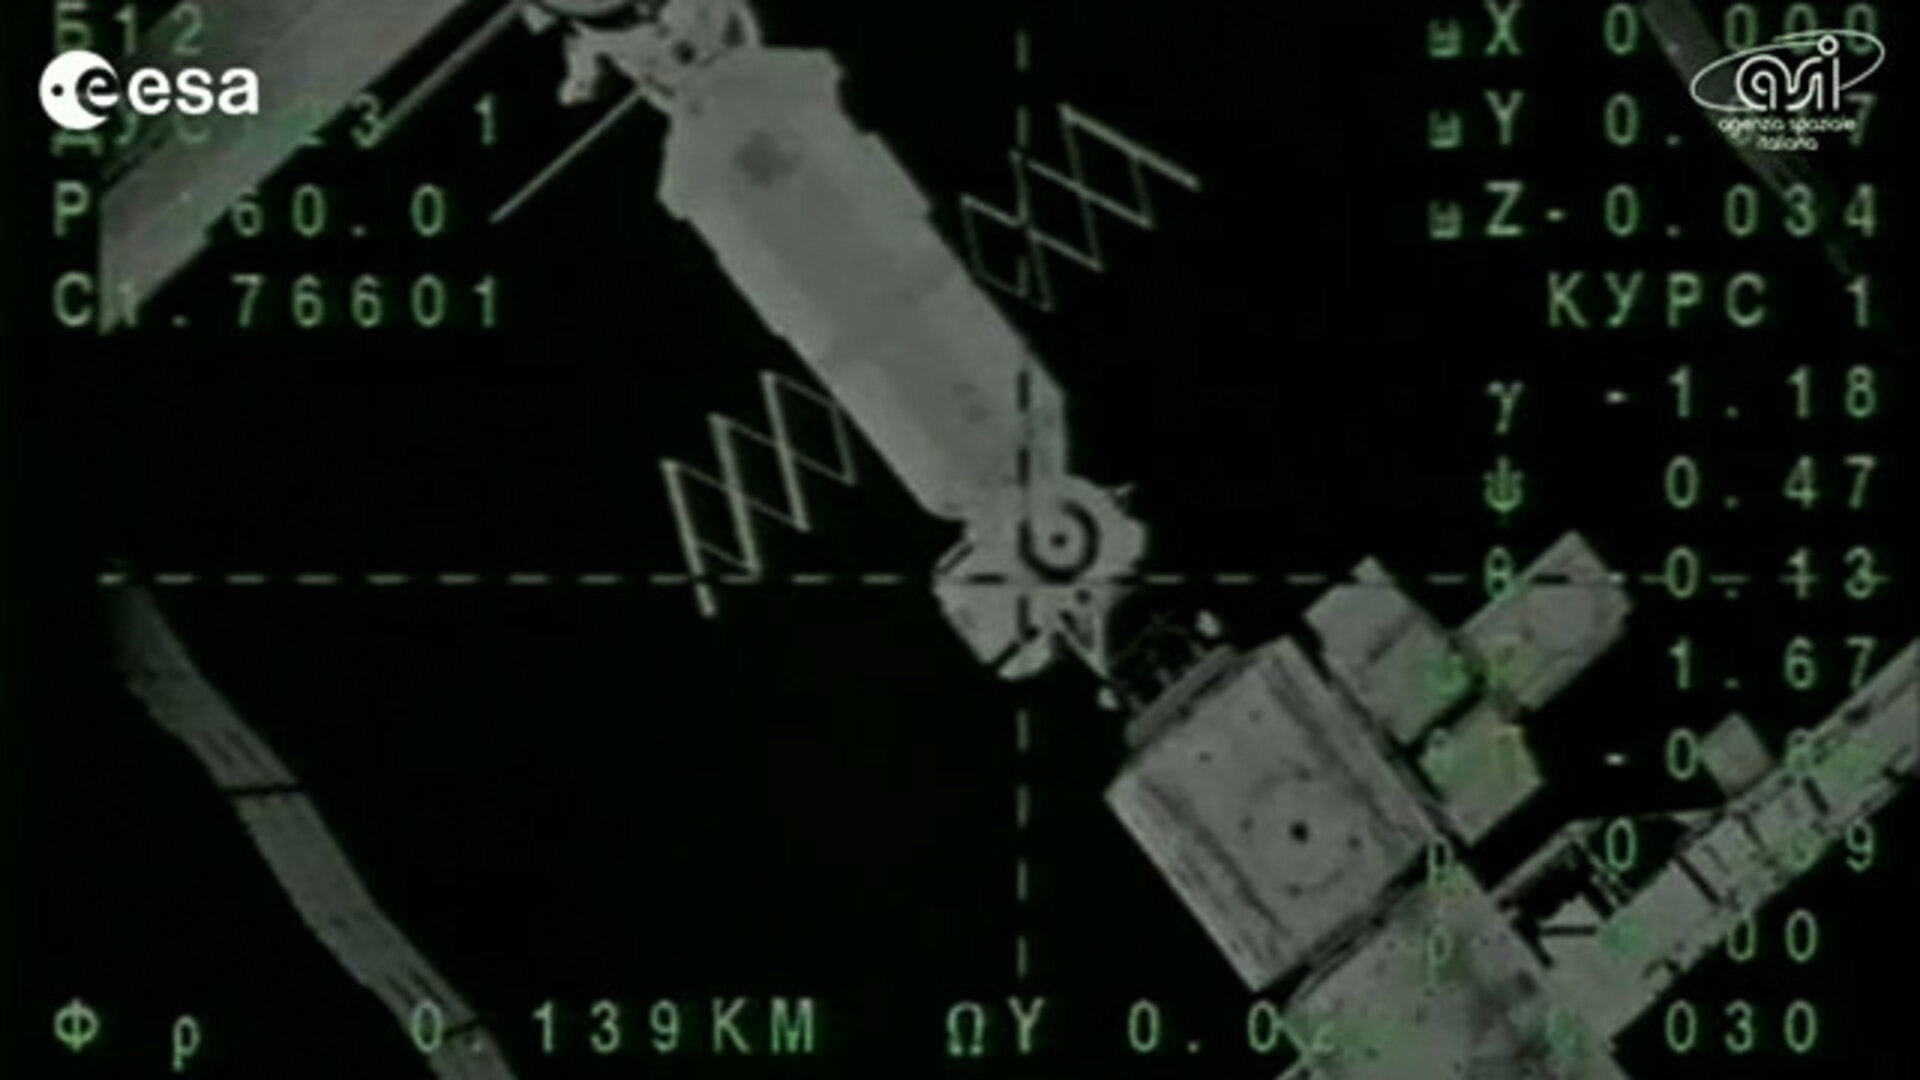 Soyuz docks with Space Station